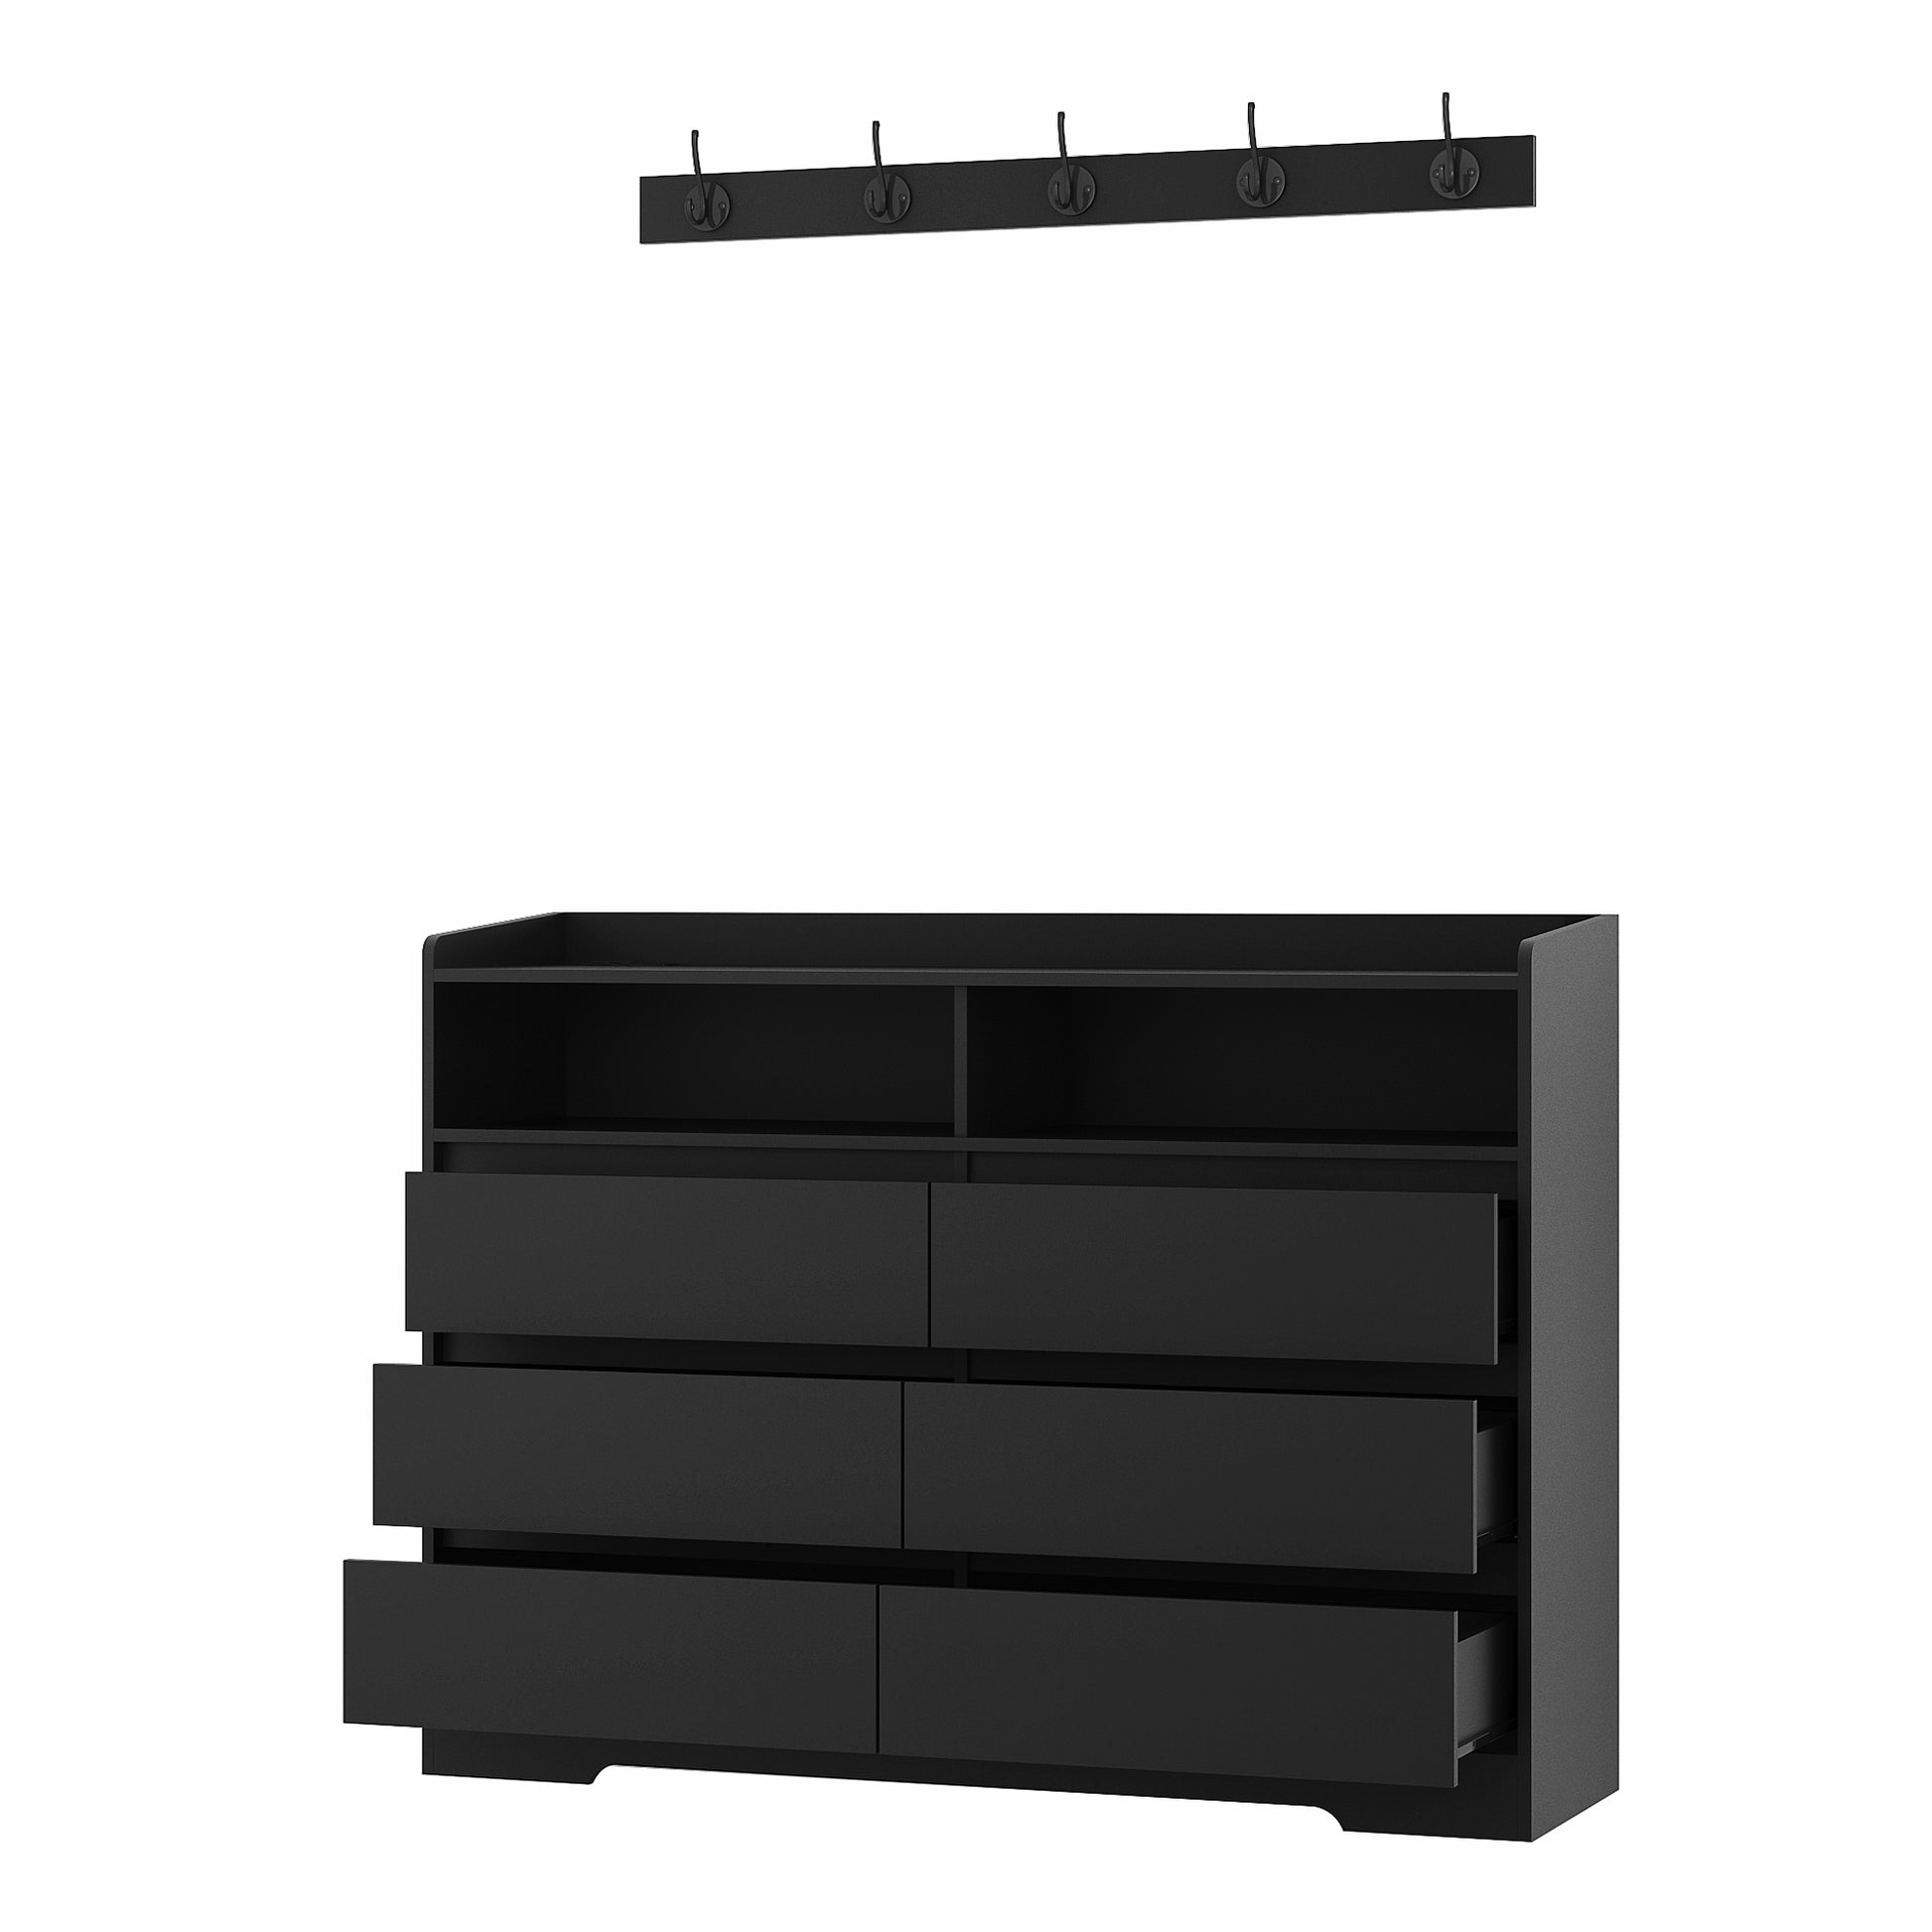 Living Room Sideboard Storage Cabinet,Drawer